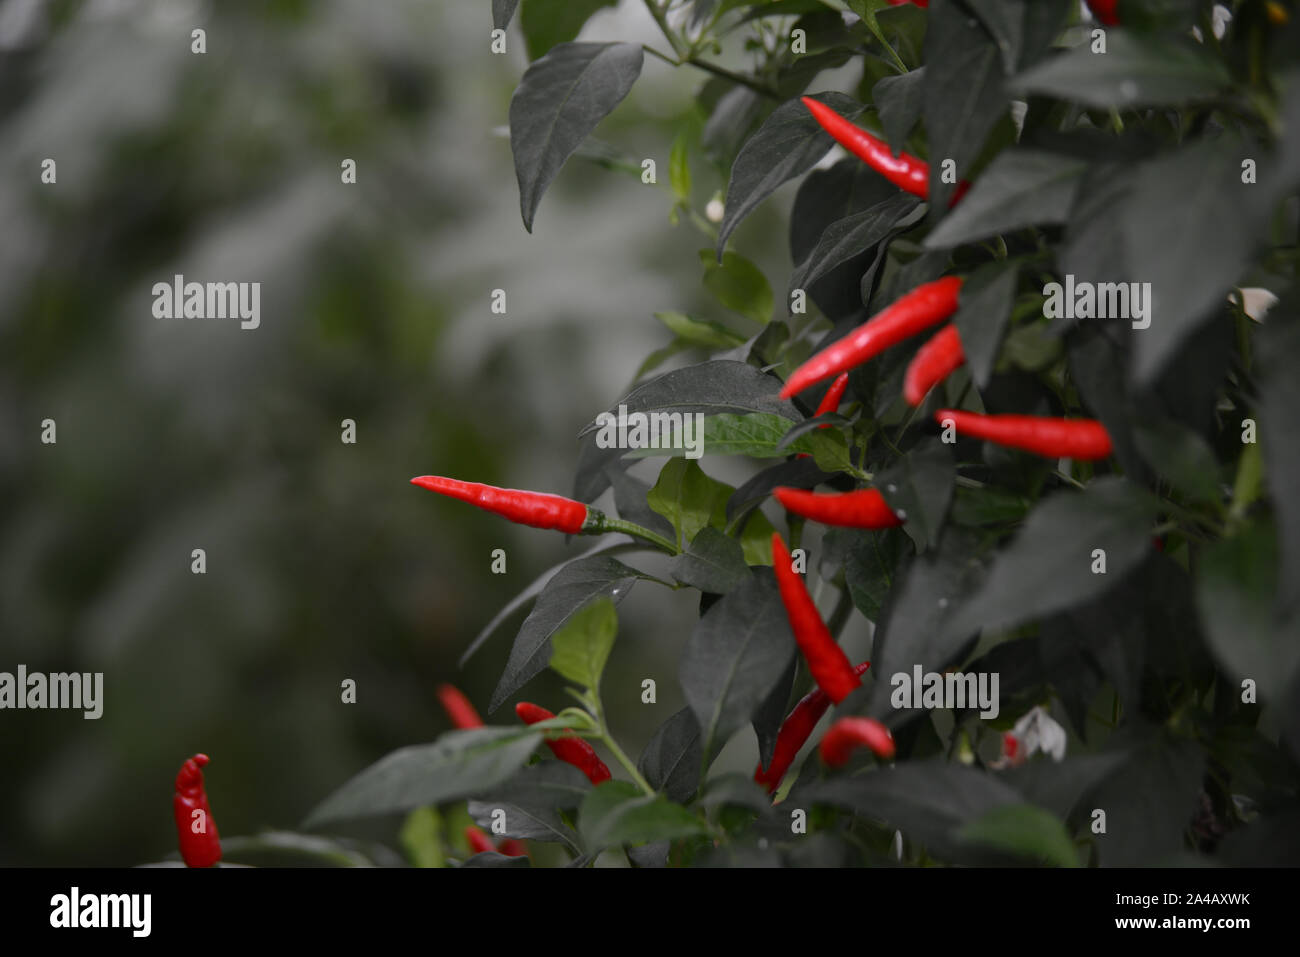 Presque prêt pour la récolte de fruits dans une entreprise commerciale tunnelhouse growing chili peppers (Capsicum annuum) pour le marché de gros. Banque D'Images